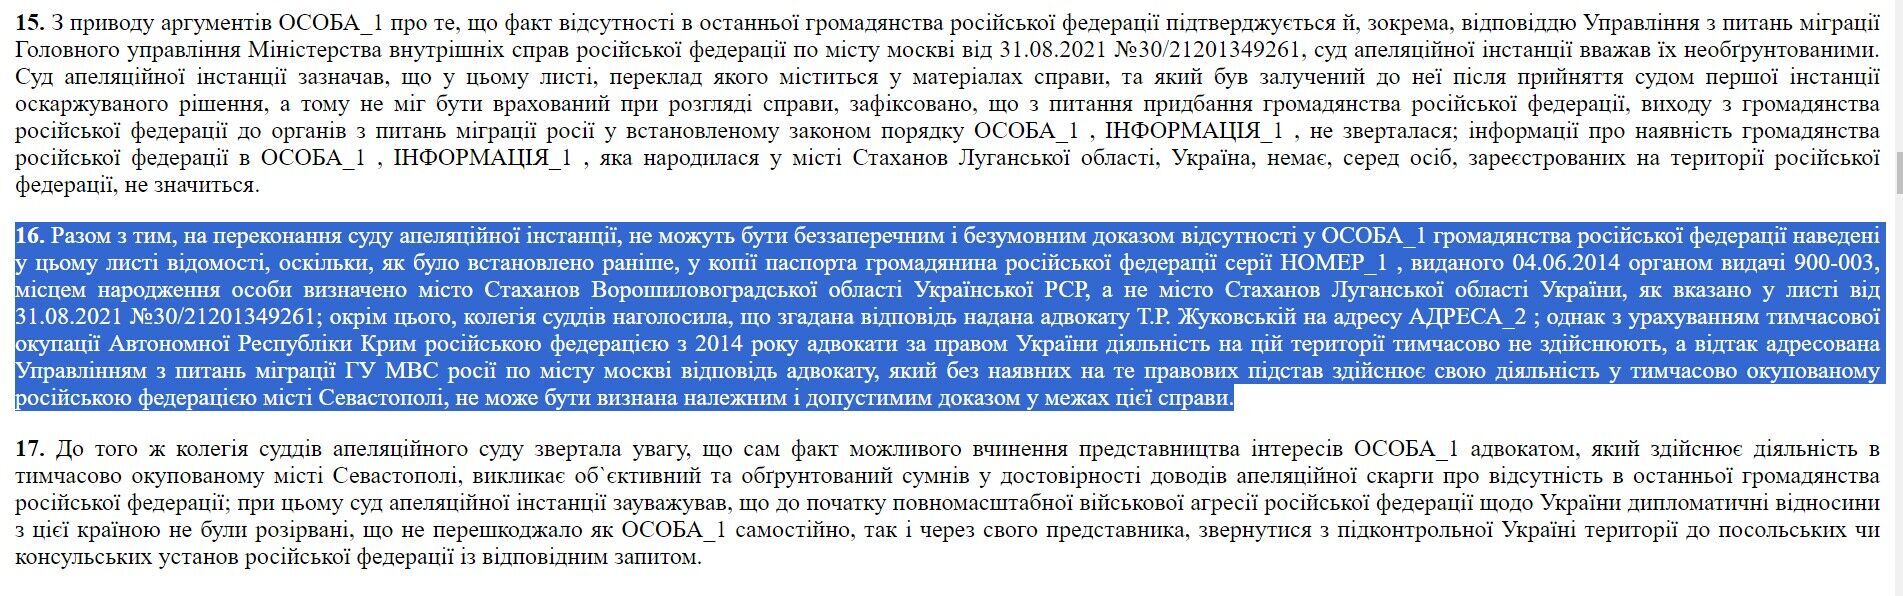 Кассационный административный суд Верховного суда отметил, что фактически фотокопии российского паспорта, предоставленного СБУ, и идентификационного номера налоговой системы не являются достаточными доказательствами